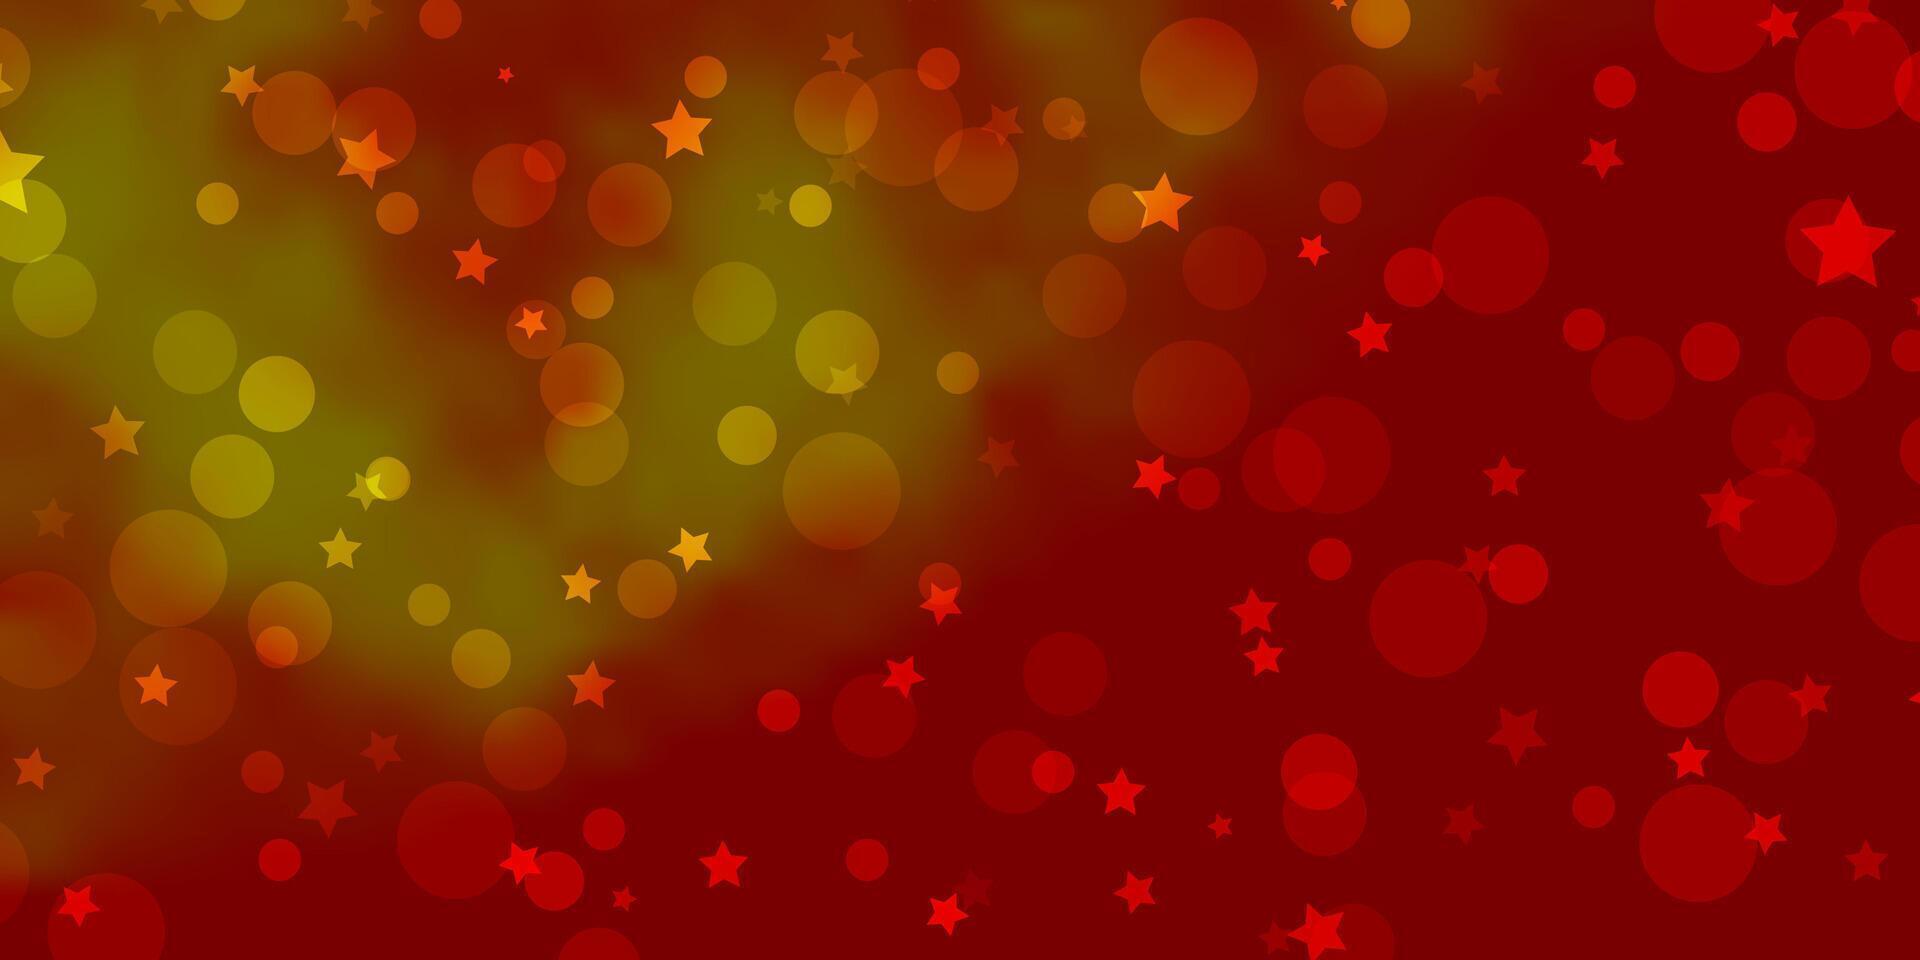 ljusröd, gul vektormall med cirklar, stjärnor. vektor